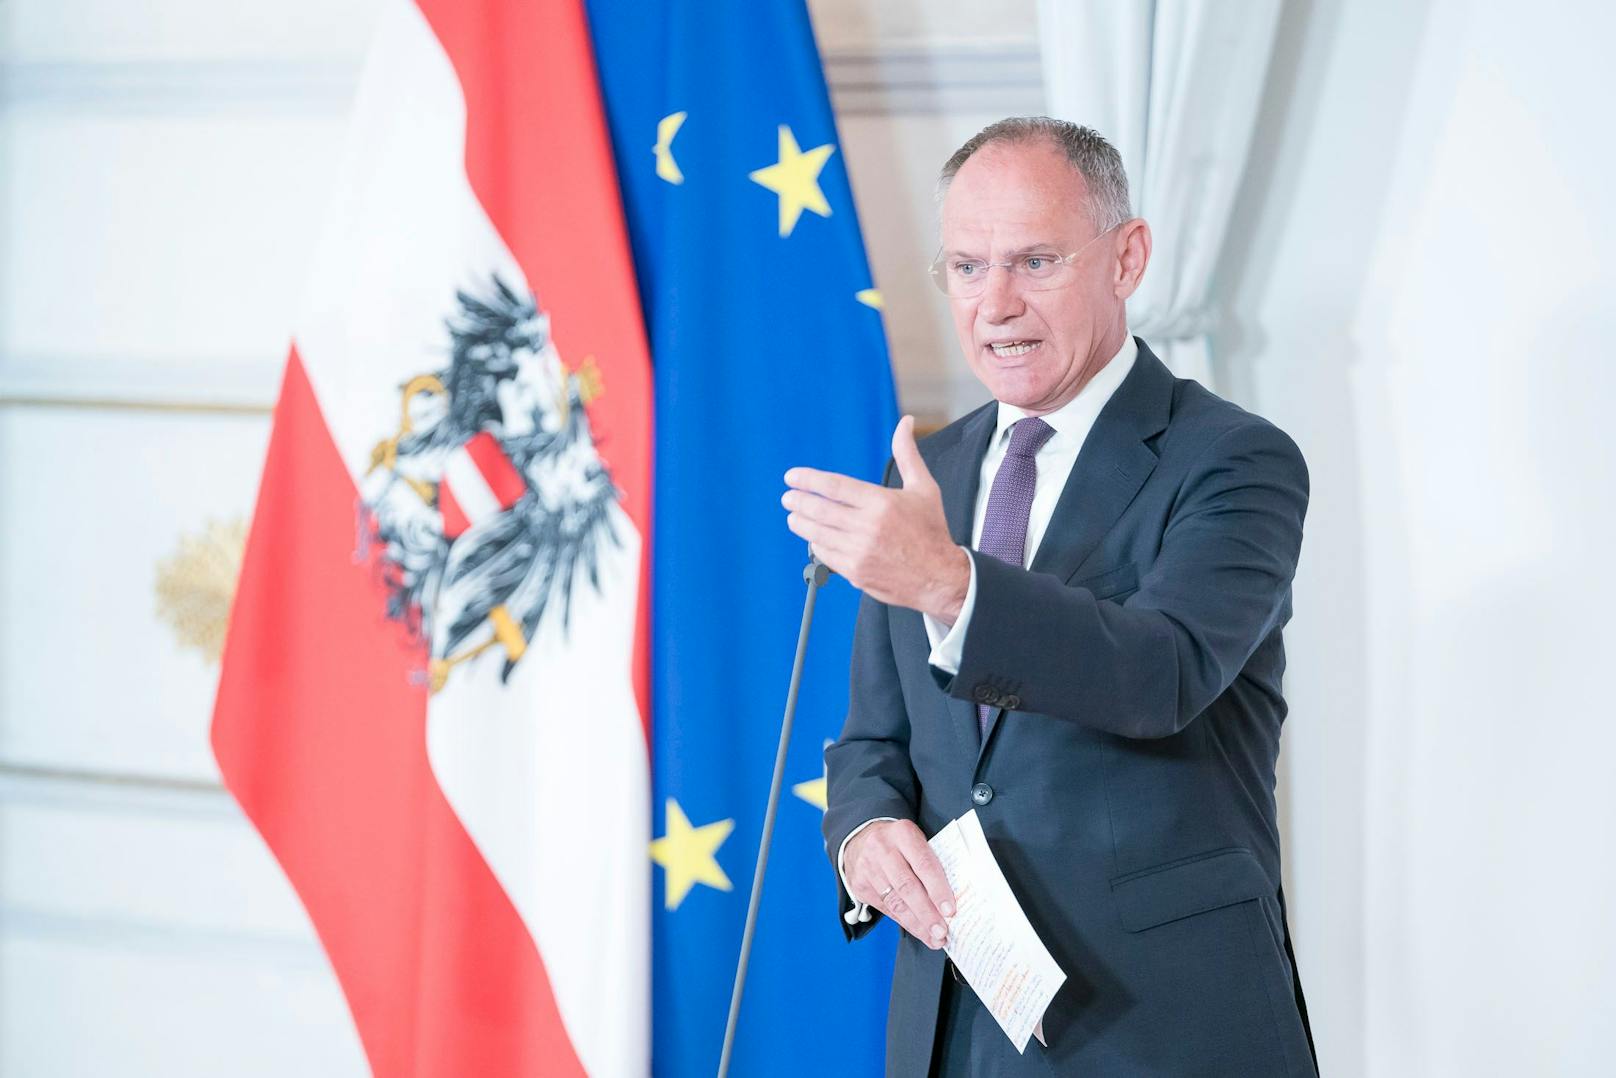 Schüsse in Wien – jetzt spricht Innenminister Karner Klartext